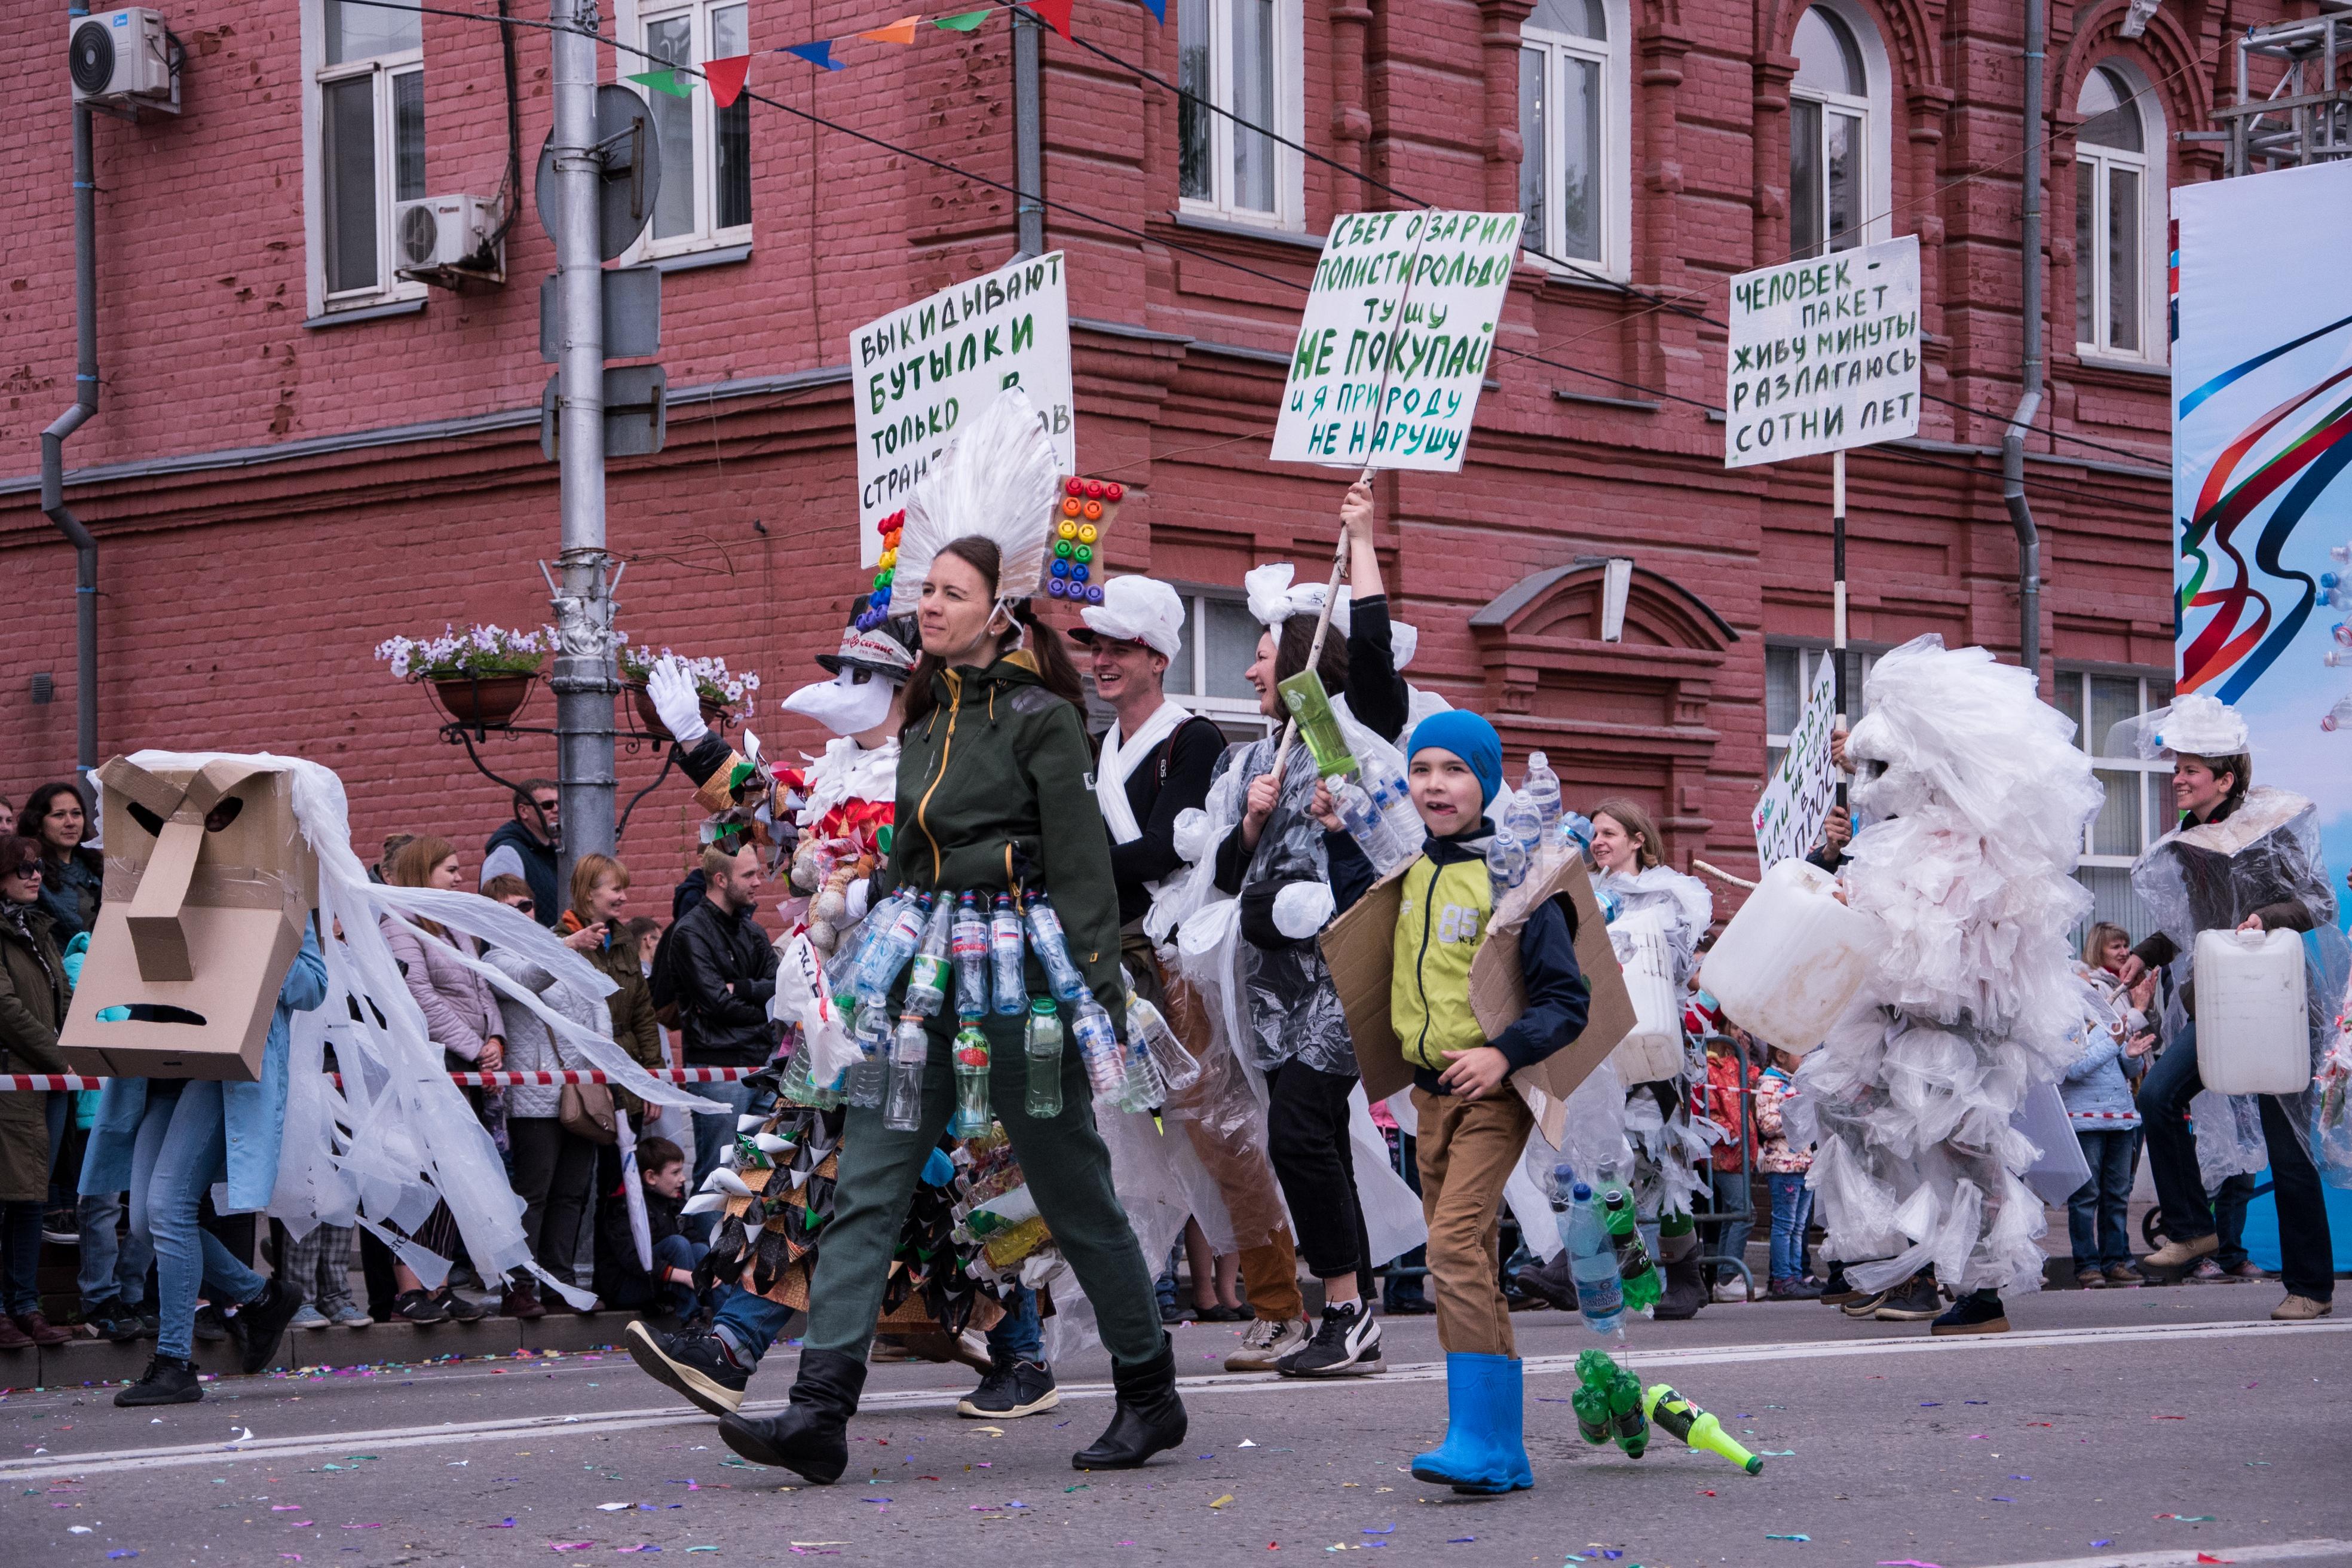 Большой фоторепортаж с карнавального шествия в Иркутске